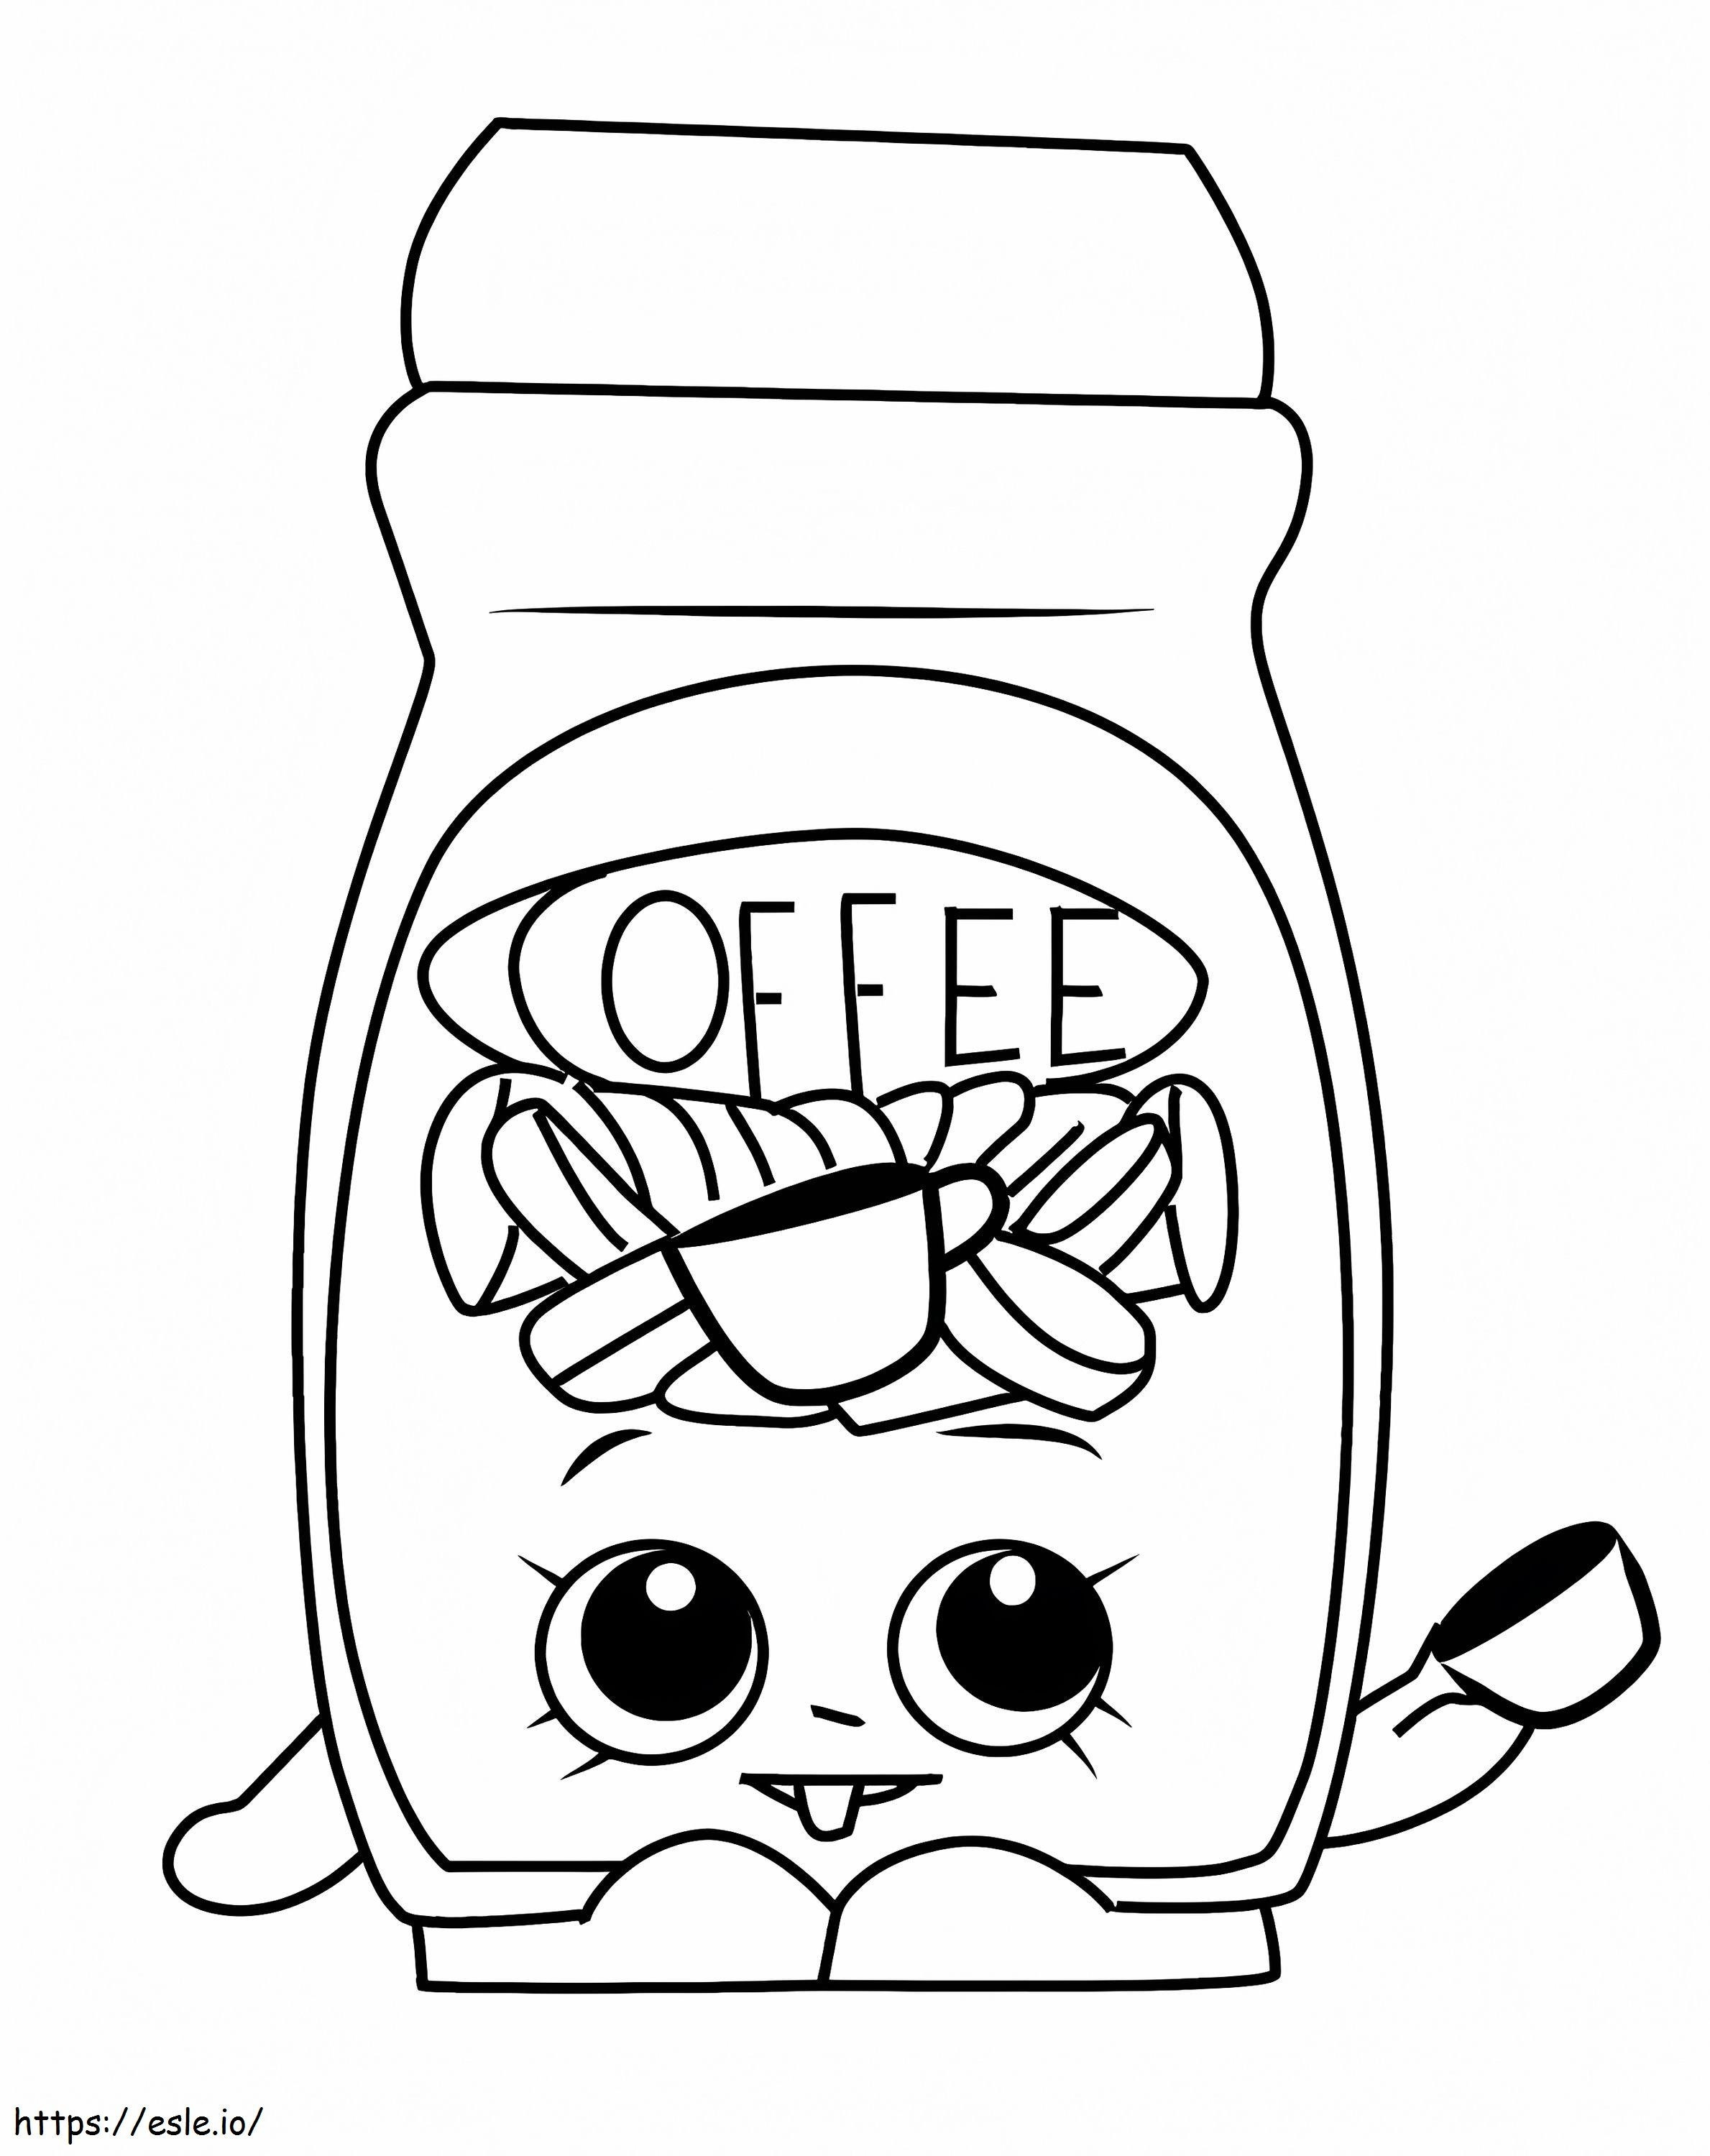 Toffy Coffee Shopkins kolorowanka